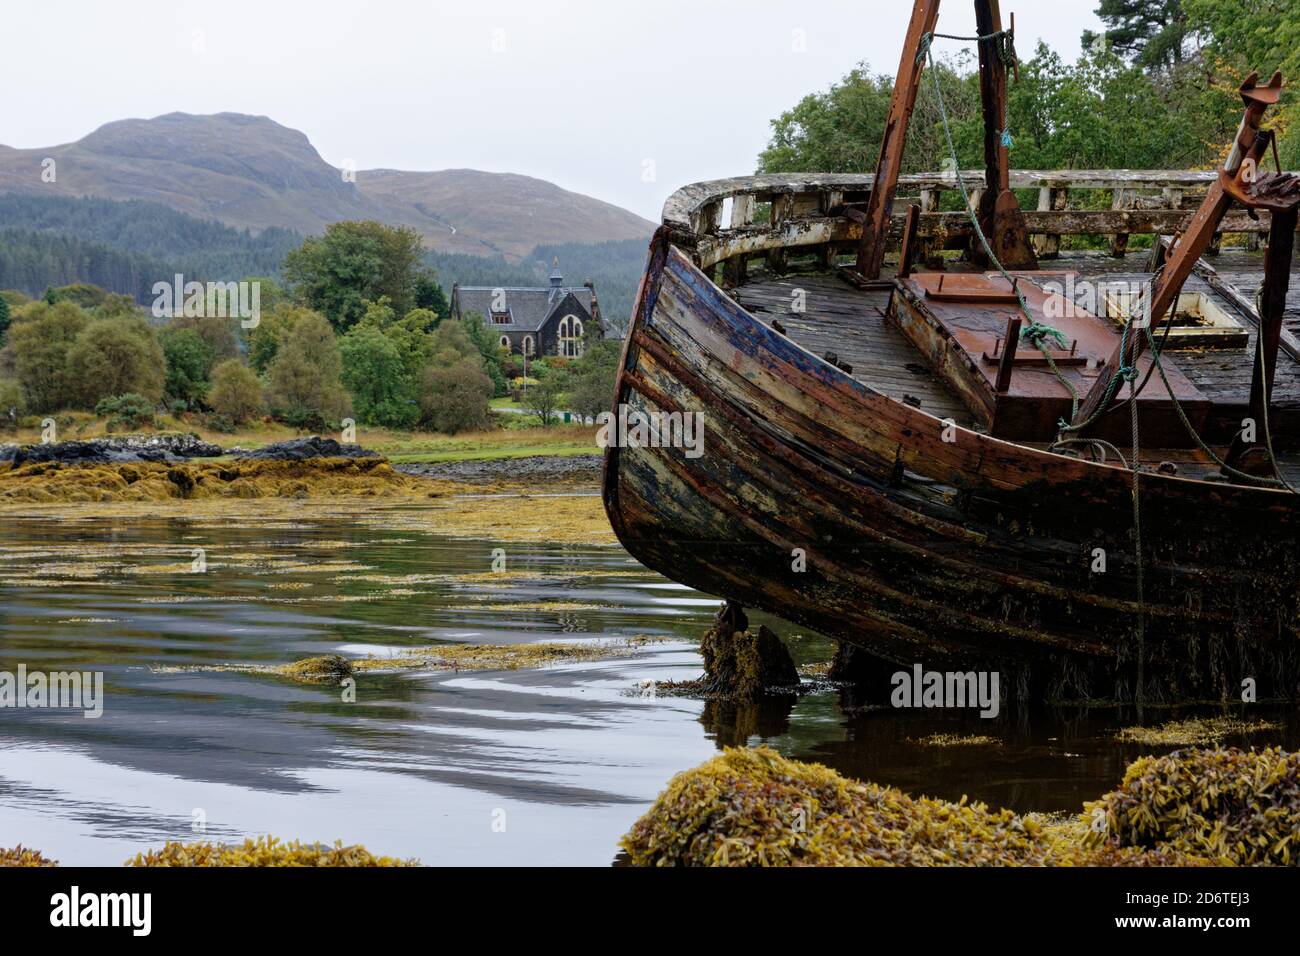 Vieux bateau de pêche en bois abandonné et en décomposition à Salen on L'île de Mull dans les Hébrides intérieures en Occident Écosse Banque D'Images